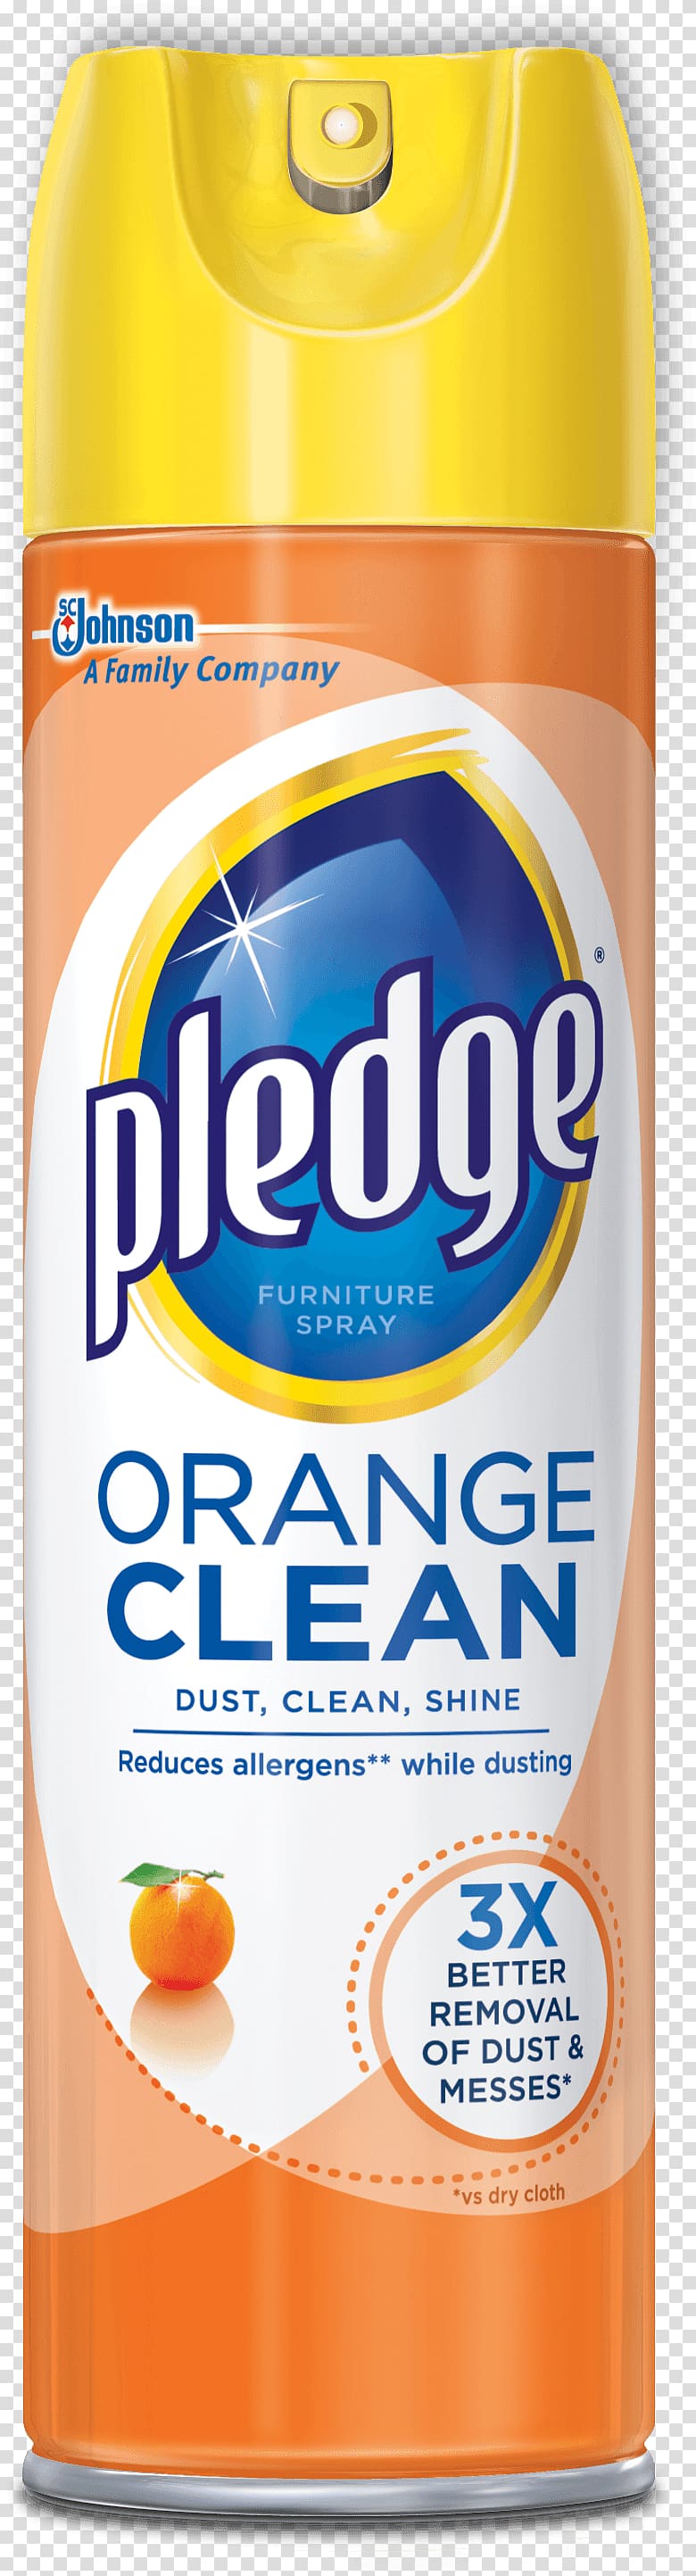 Pledge Cleaning Blem Furniture Cleaner, Lemon orange transparent background PNG clipart